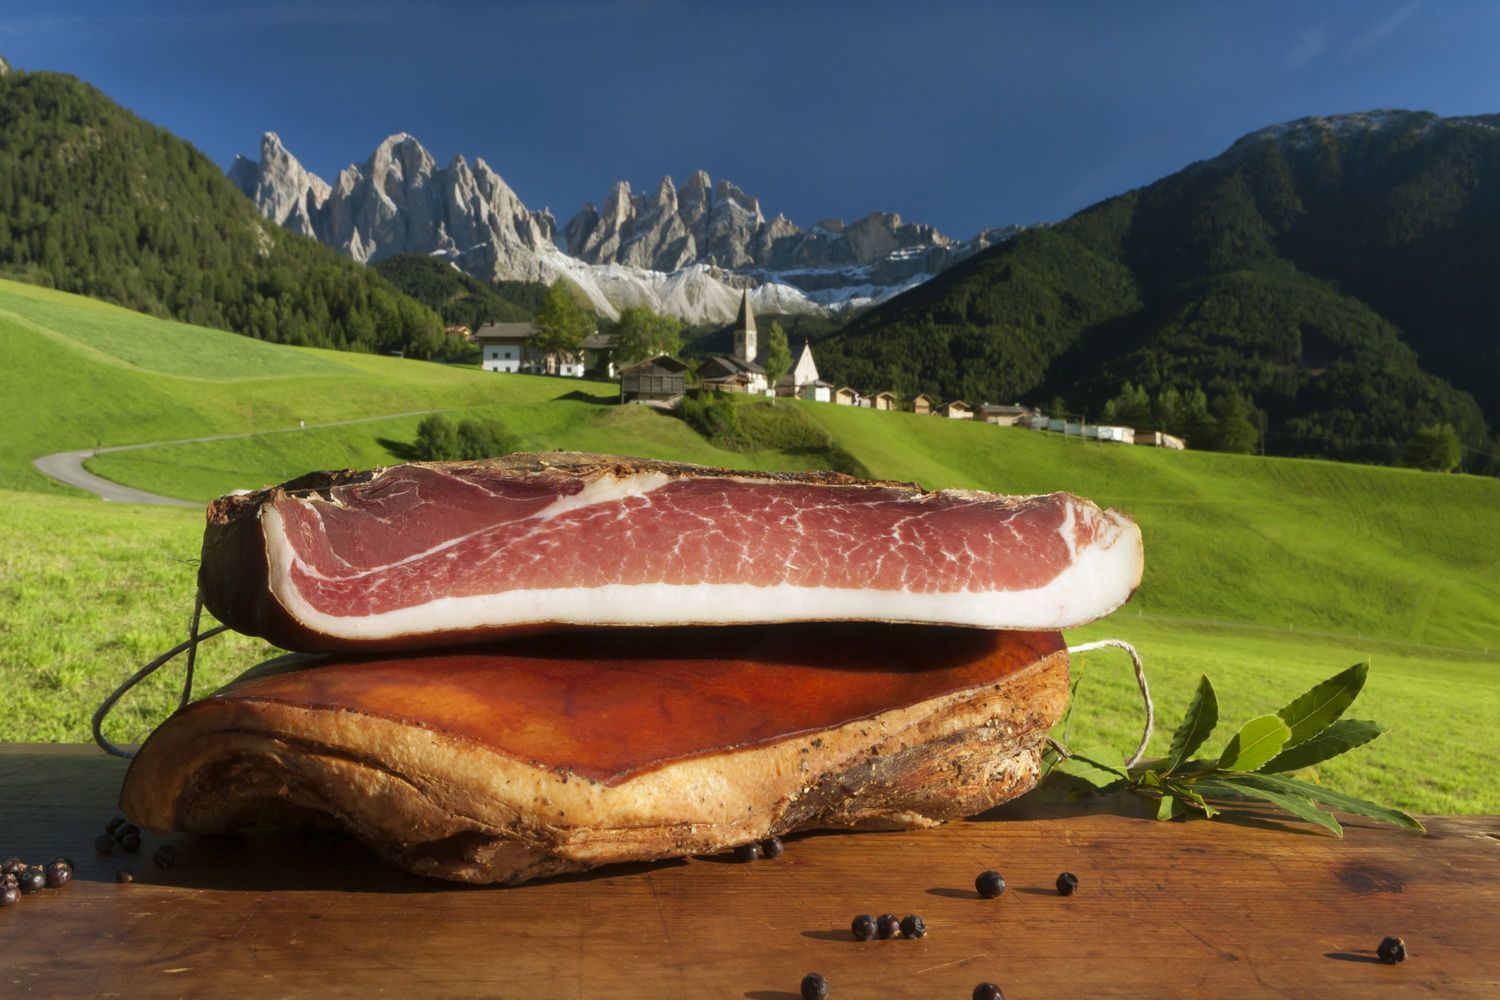  Speck Alto Adige Igp: nel 2015 riconfermato l’andamento positivo 